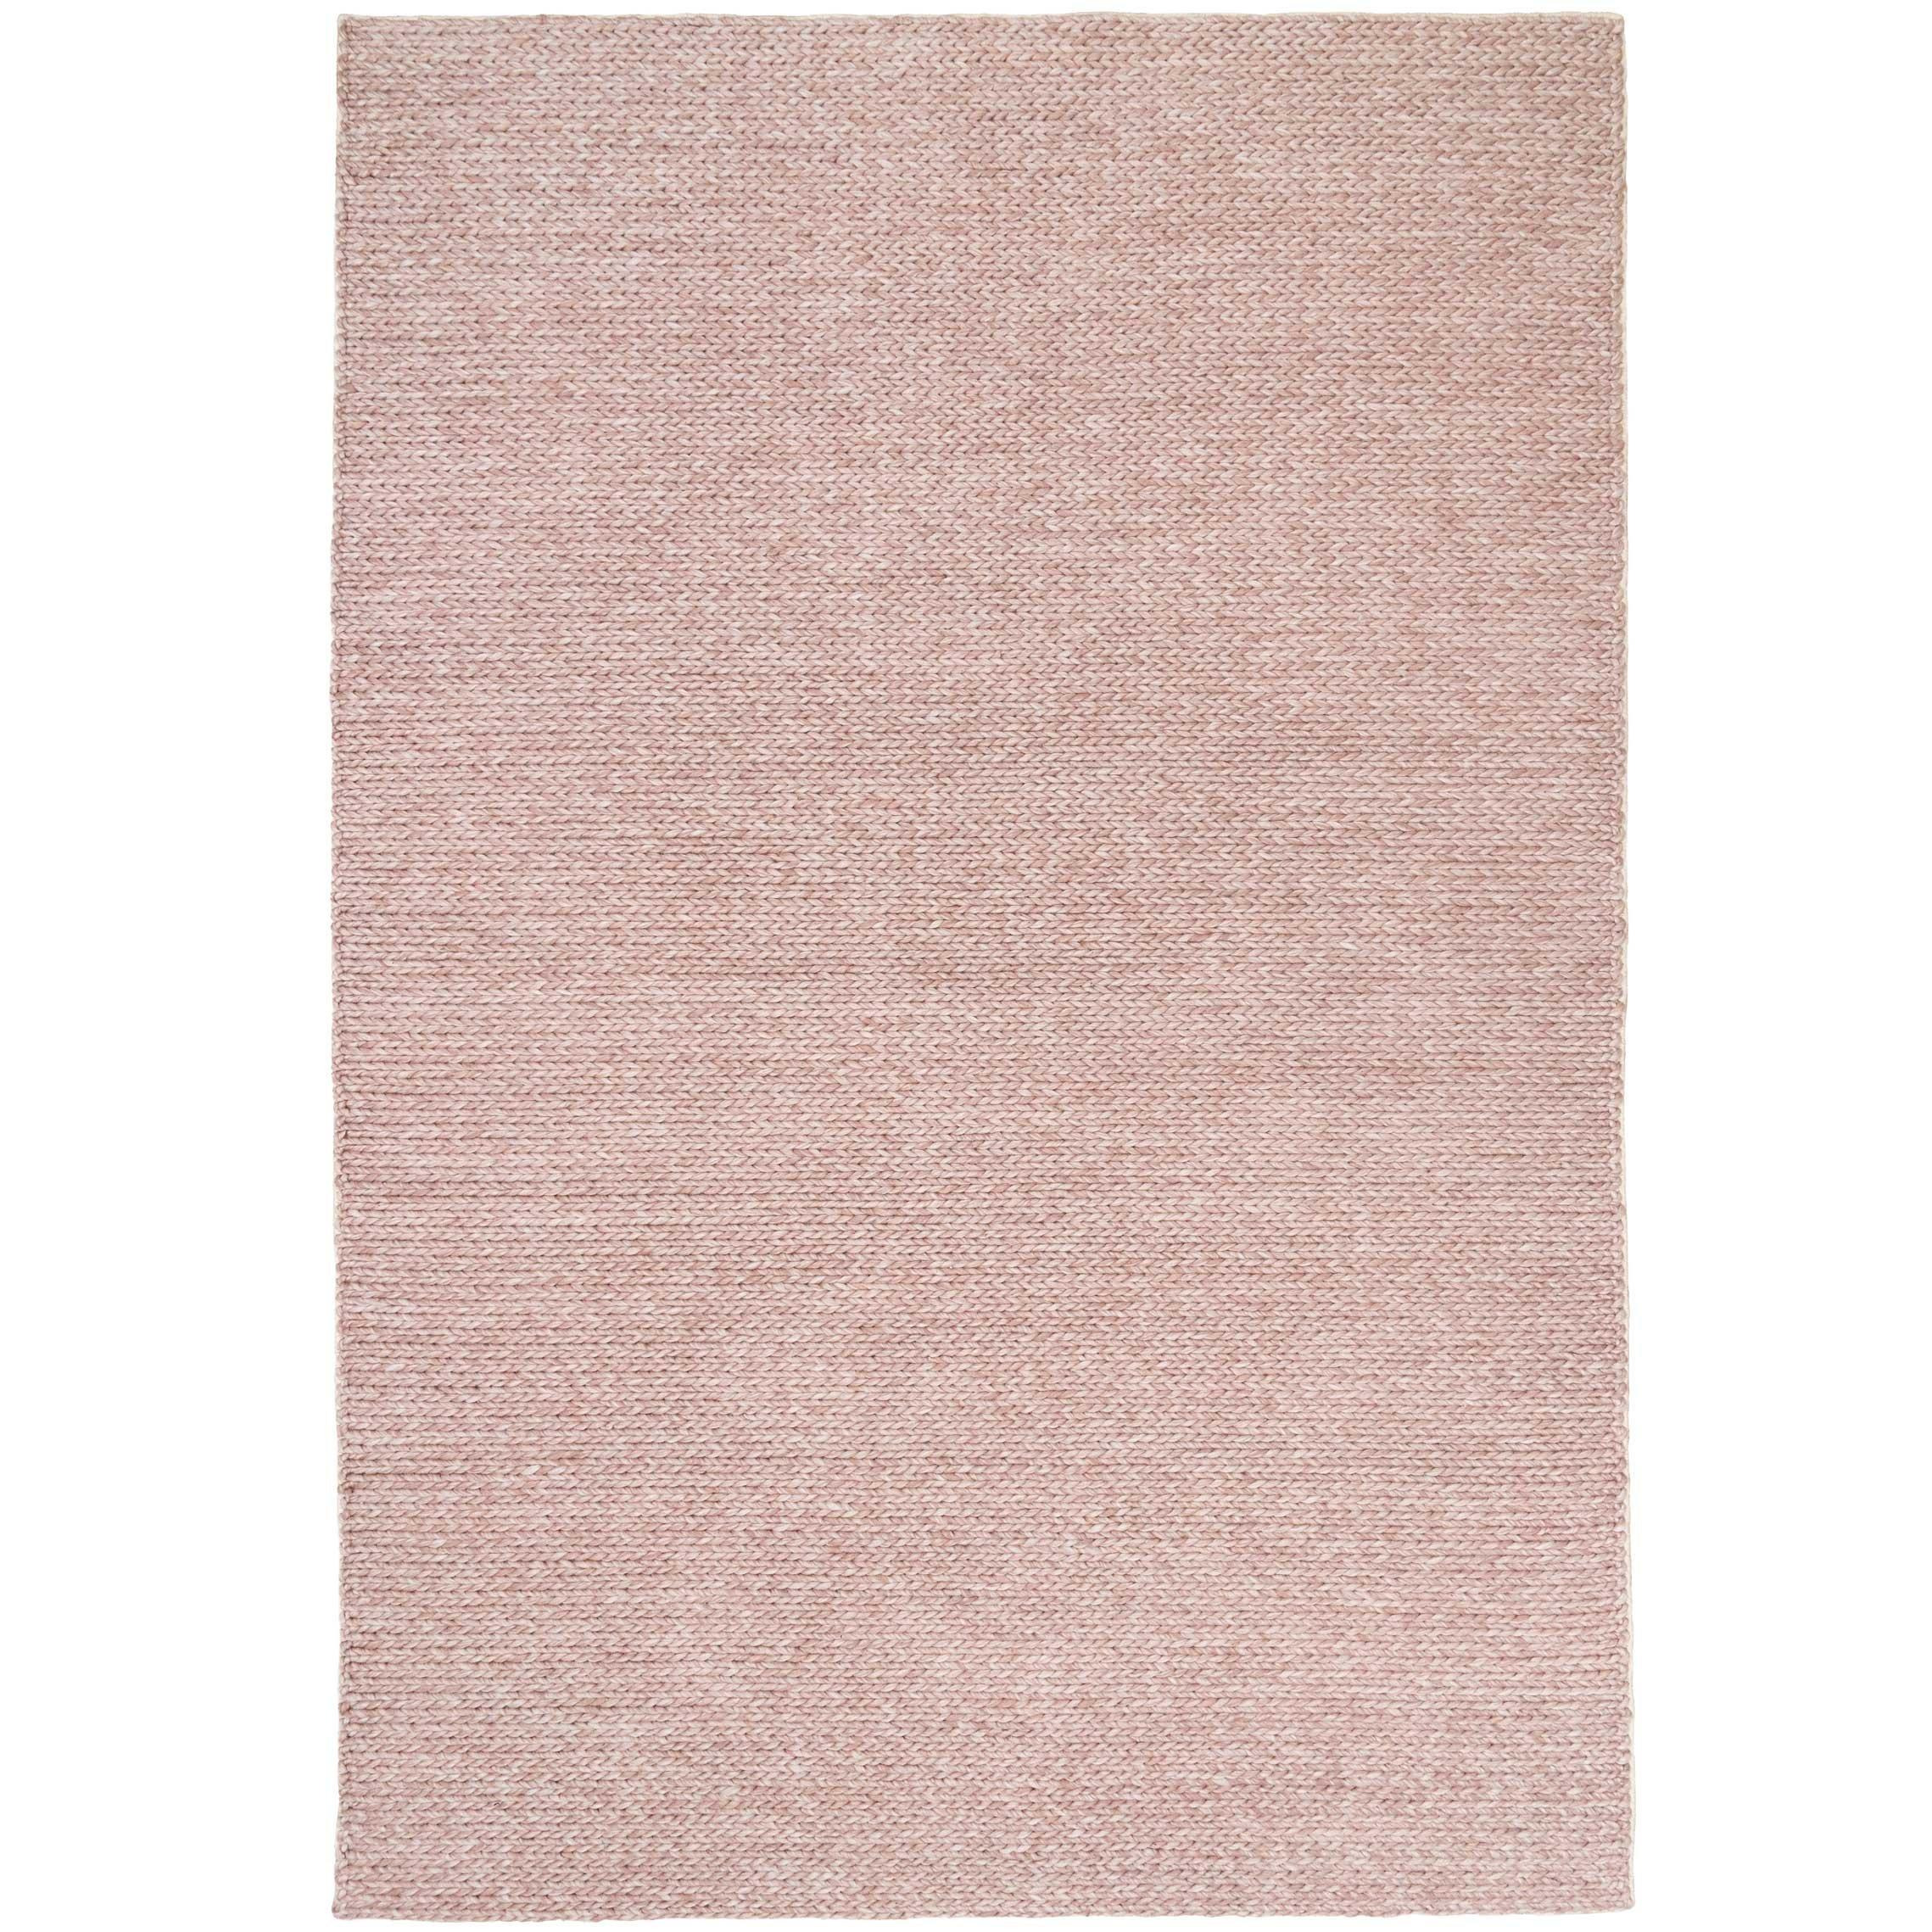 Blush Pink Luxury Wool Blend Plait Rug - image 1